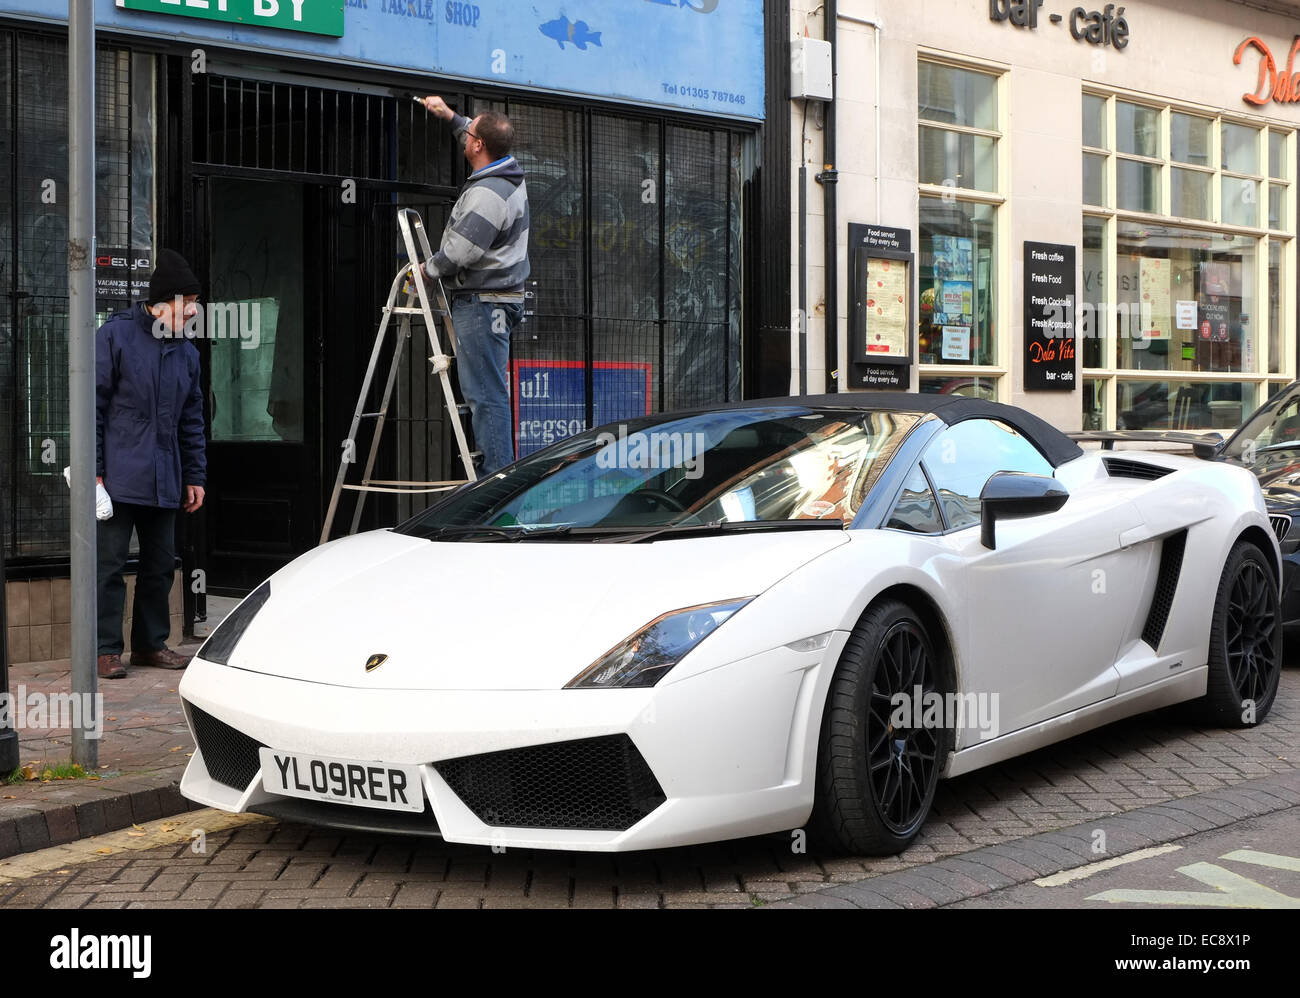 Alter Mann und ein Mann malen eine Ladenfront neben ein Exot, ein Lamborghini, Weymouth Stadtzentrum entfernt. 10. Dezember 2014 Stockfoto